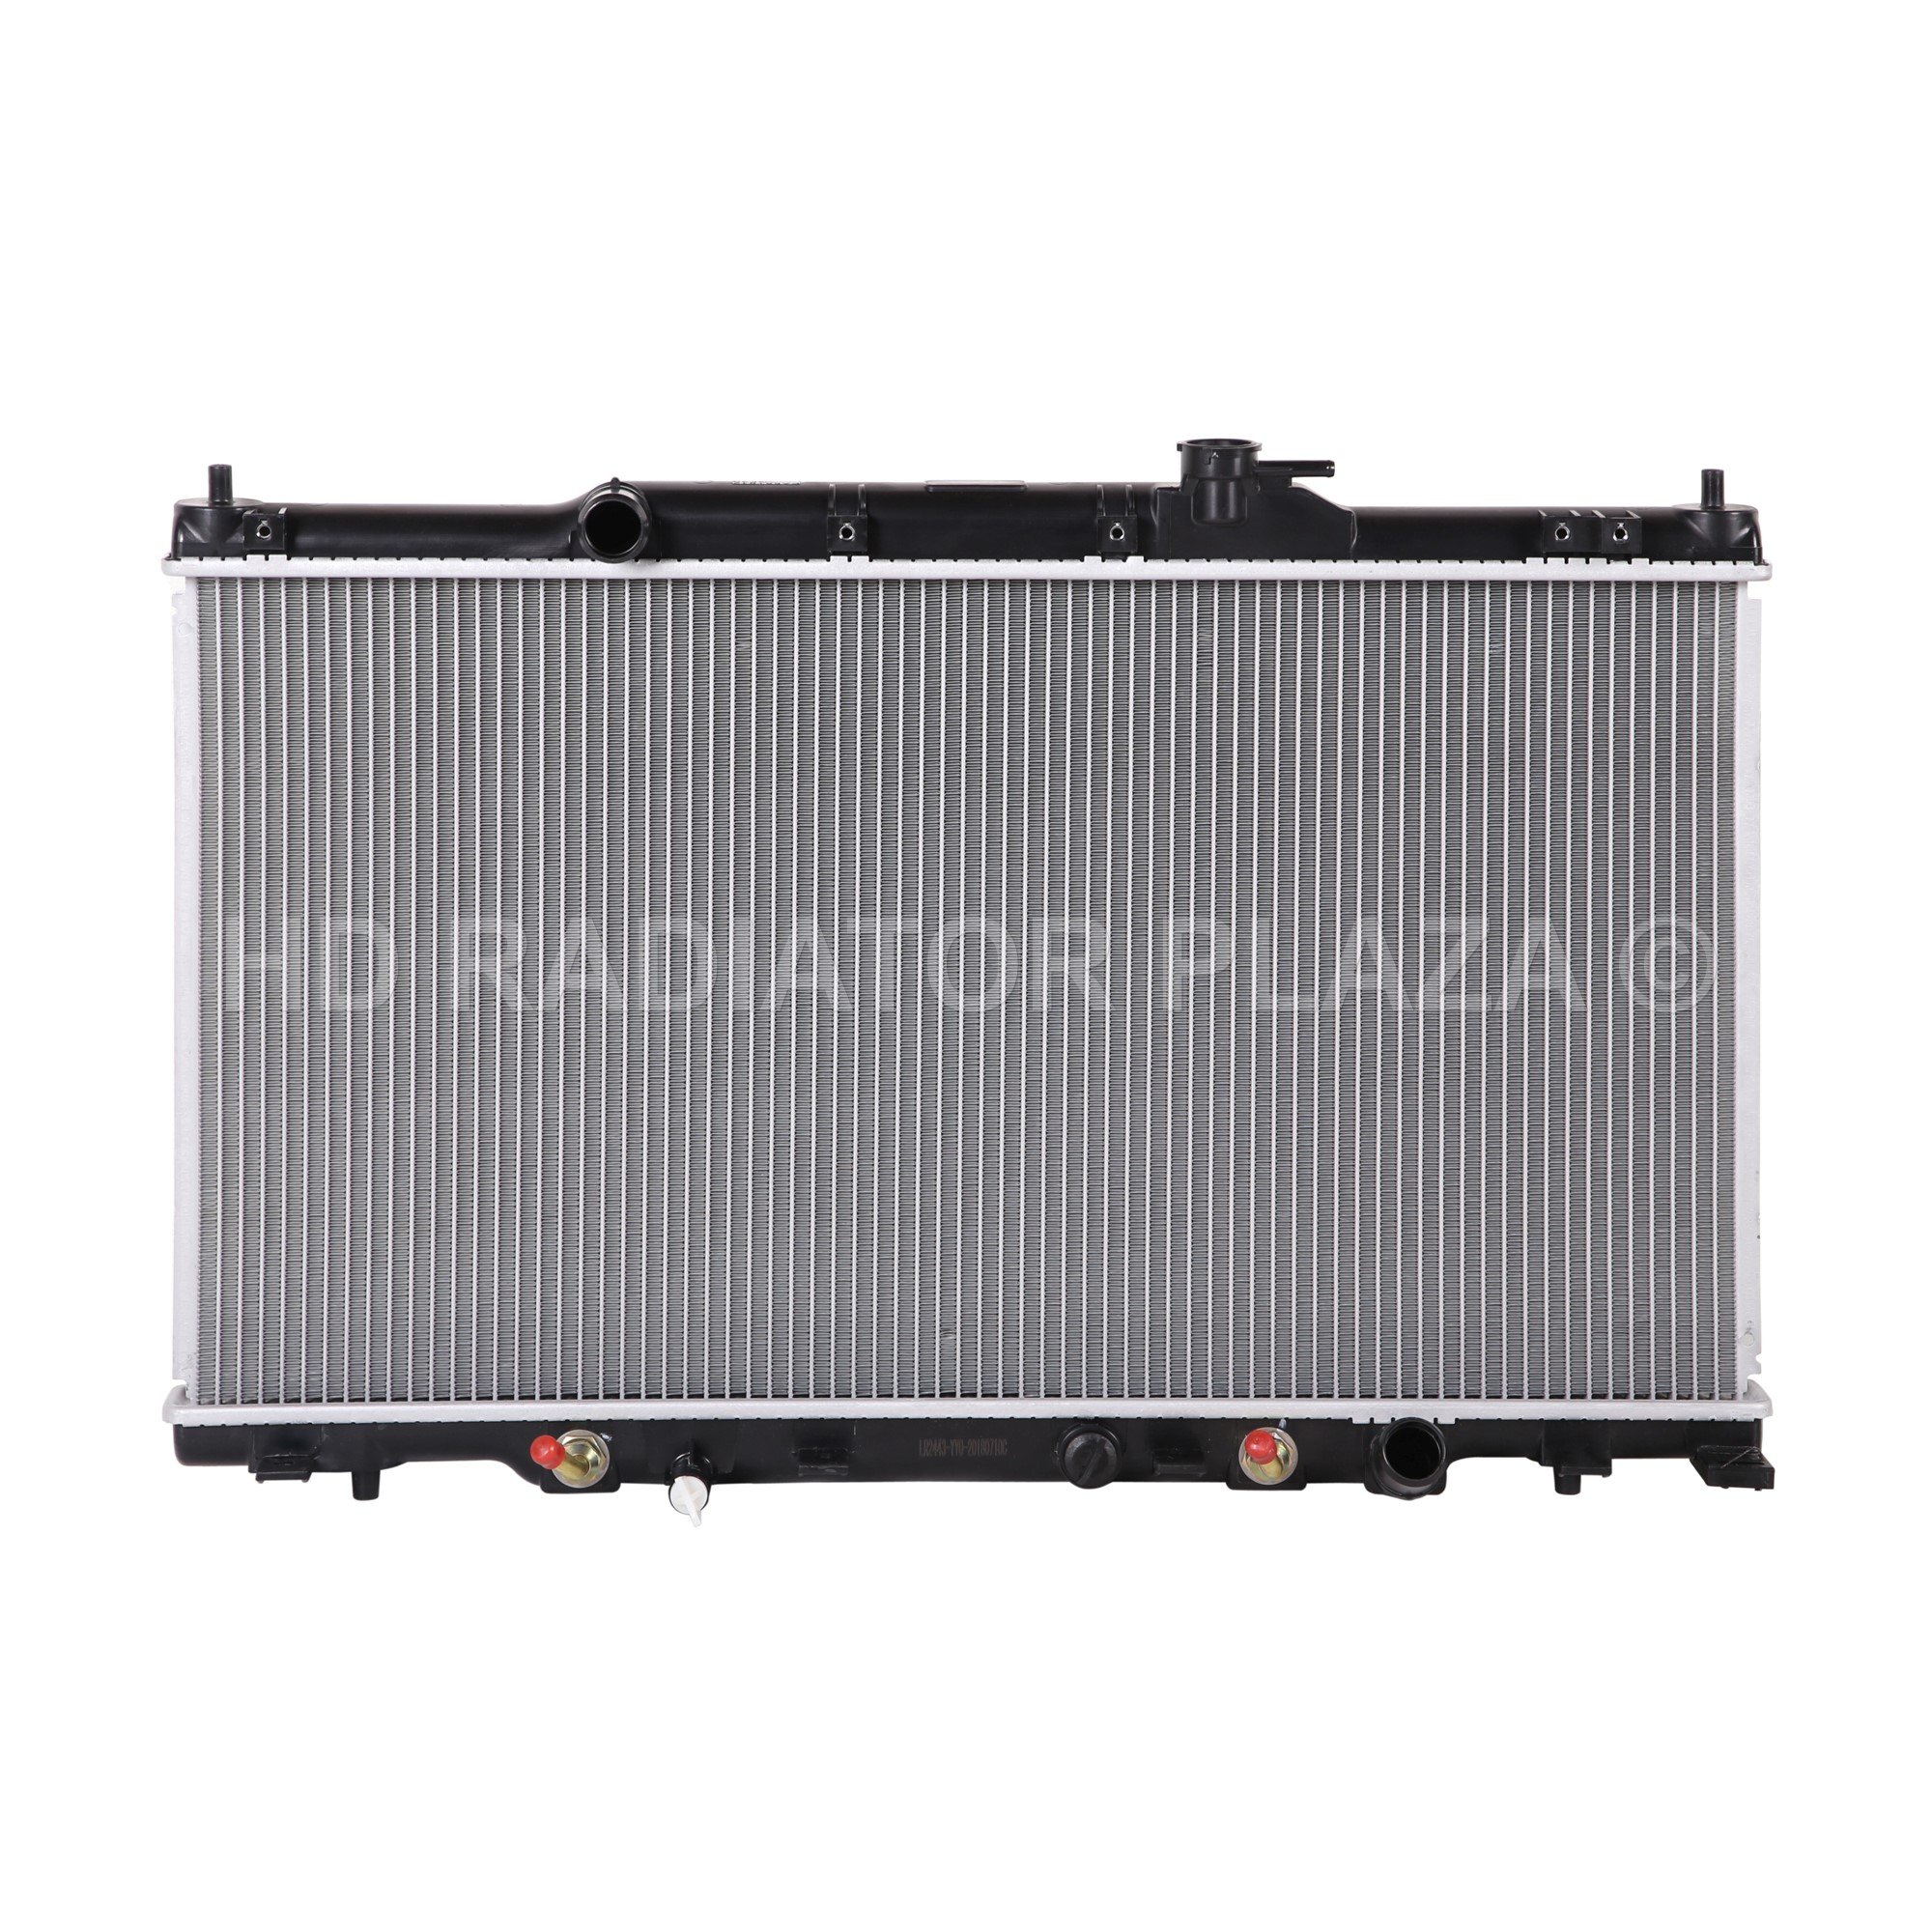 Radiator for 02-06 Honda CR-V / Element